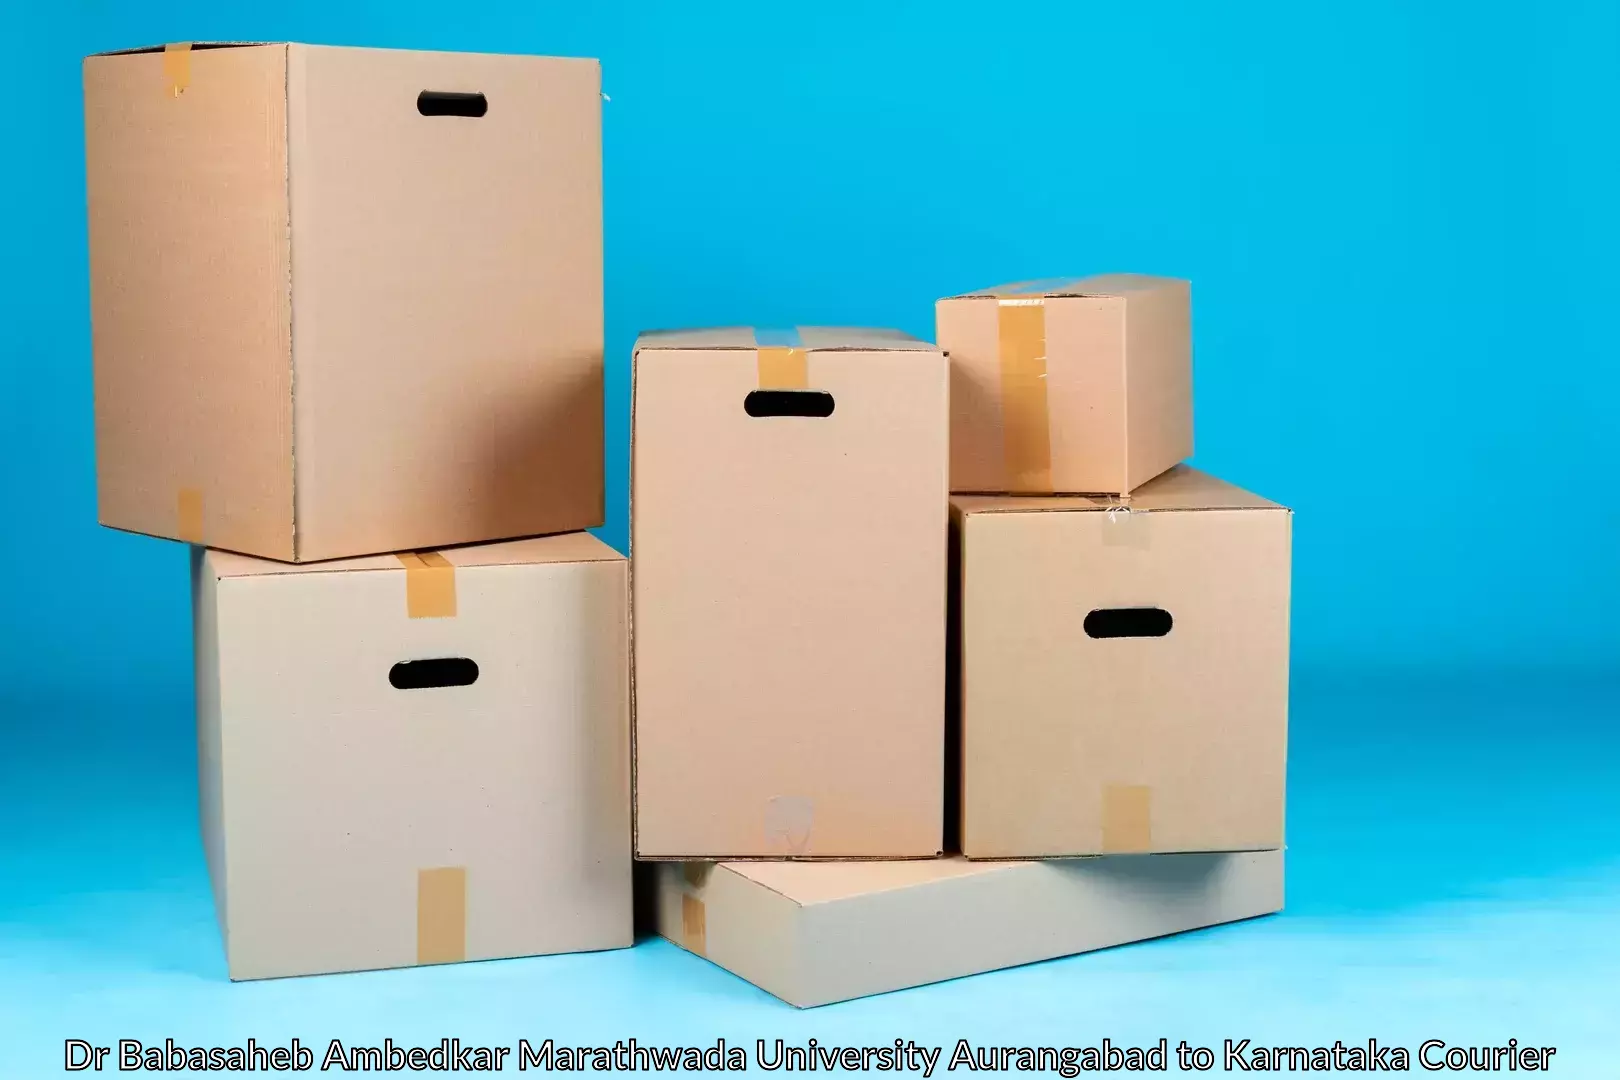 Home relocation solutions Dr Babasaheb Ambedkar Marathwada University Aurangabad to Shimoga